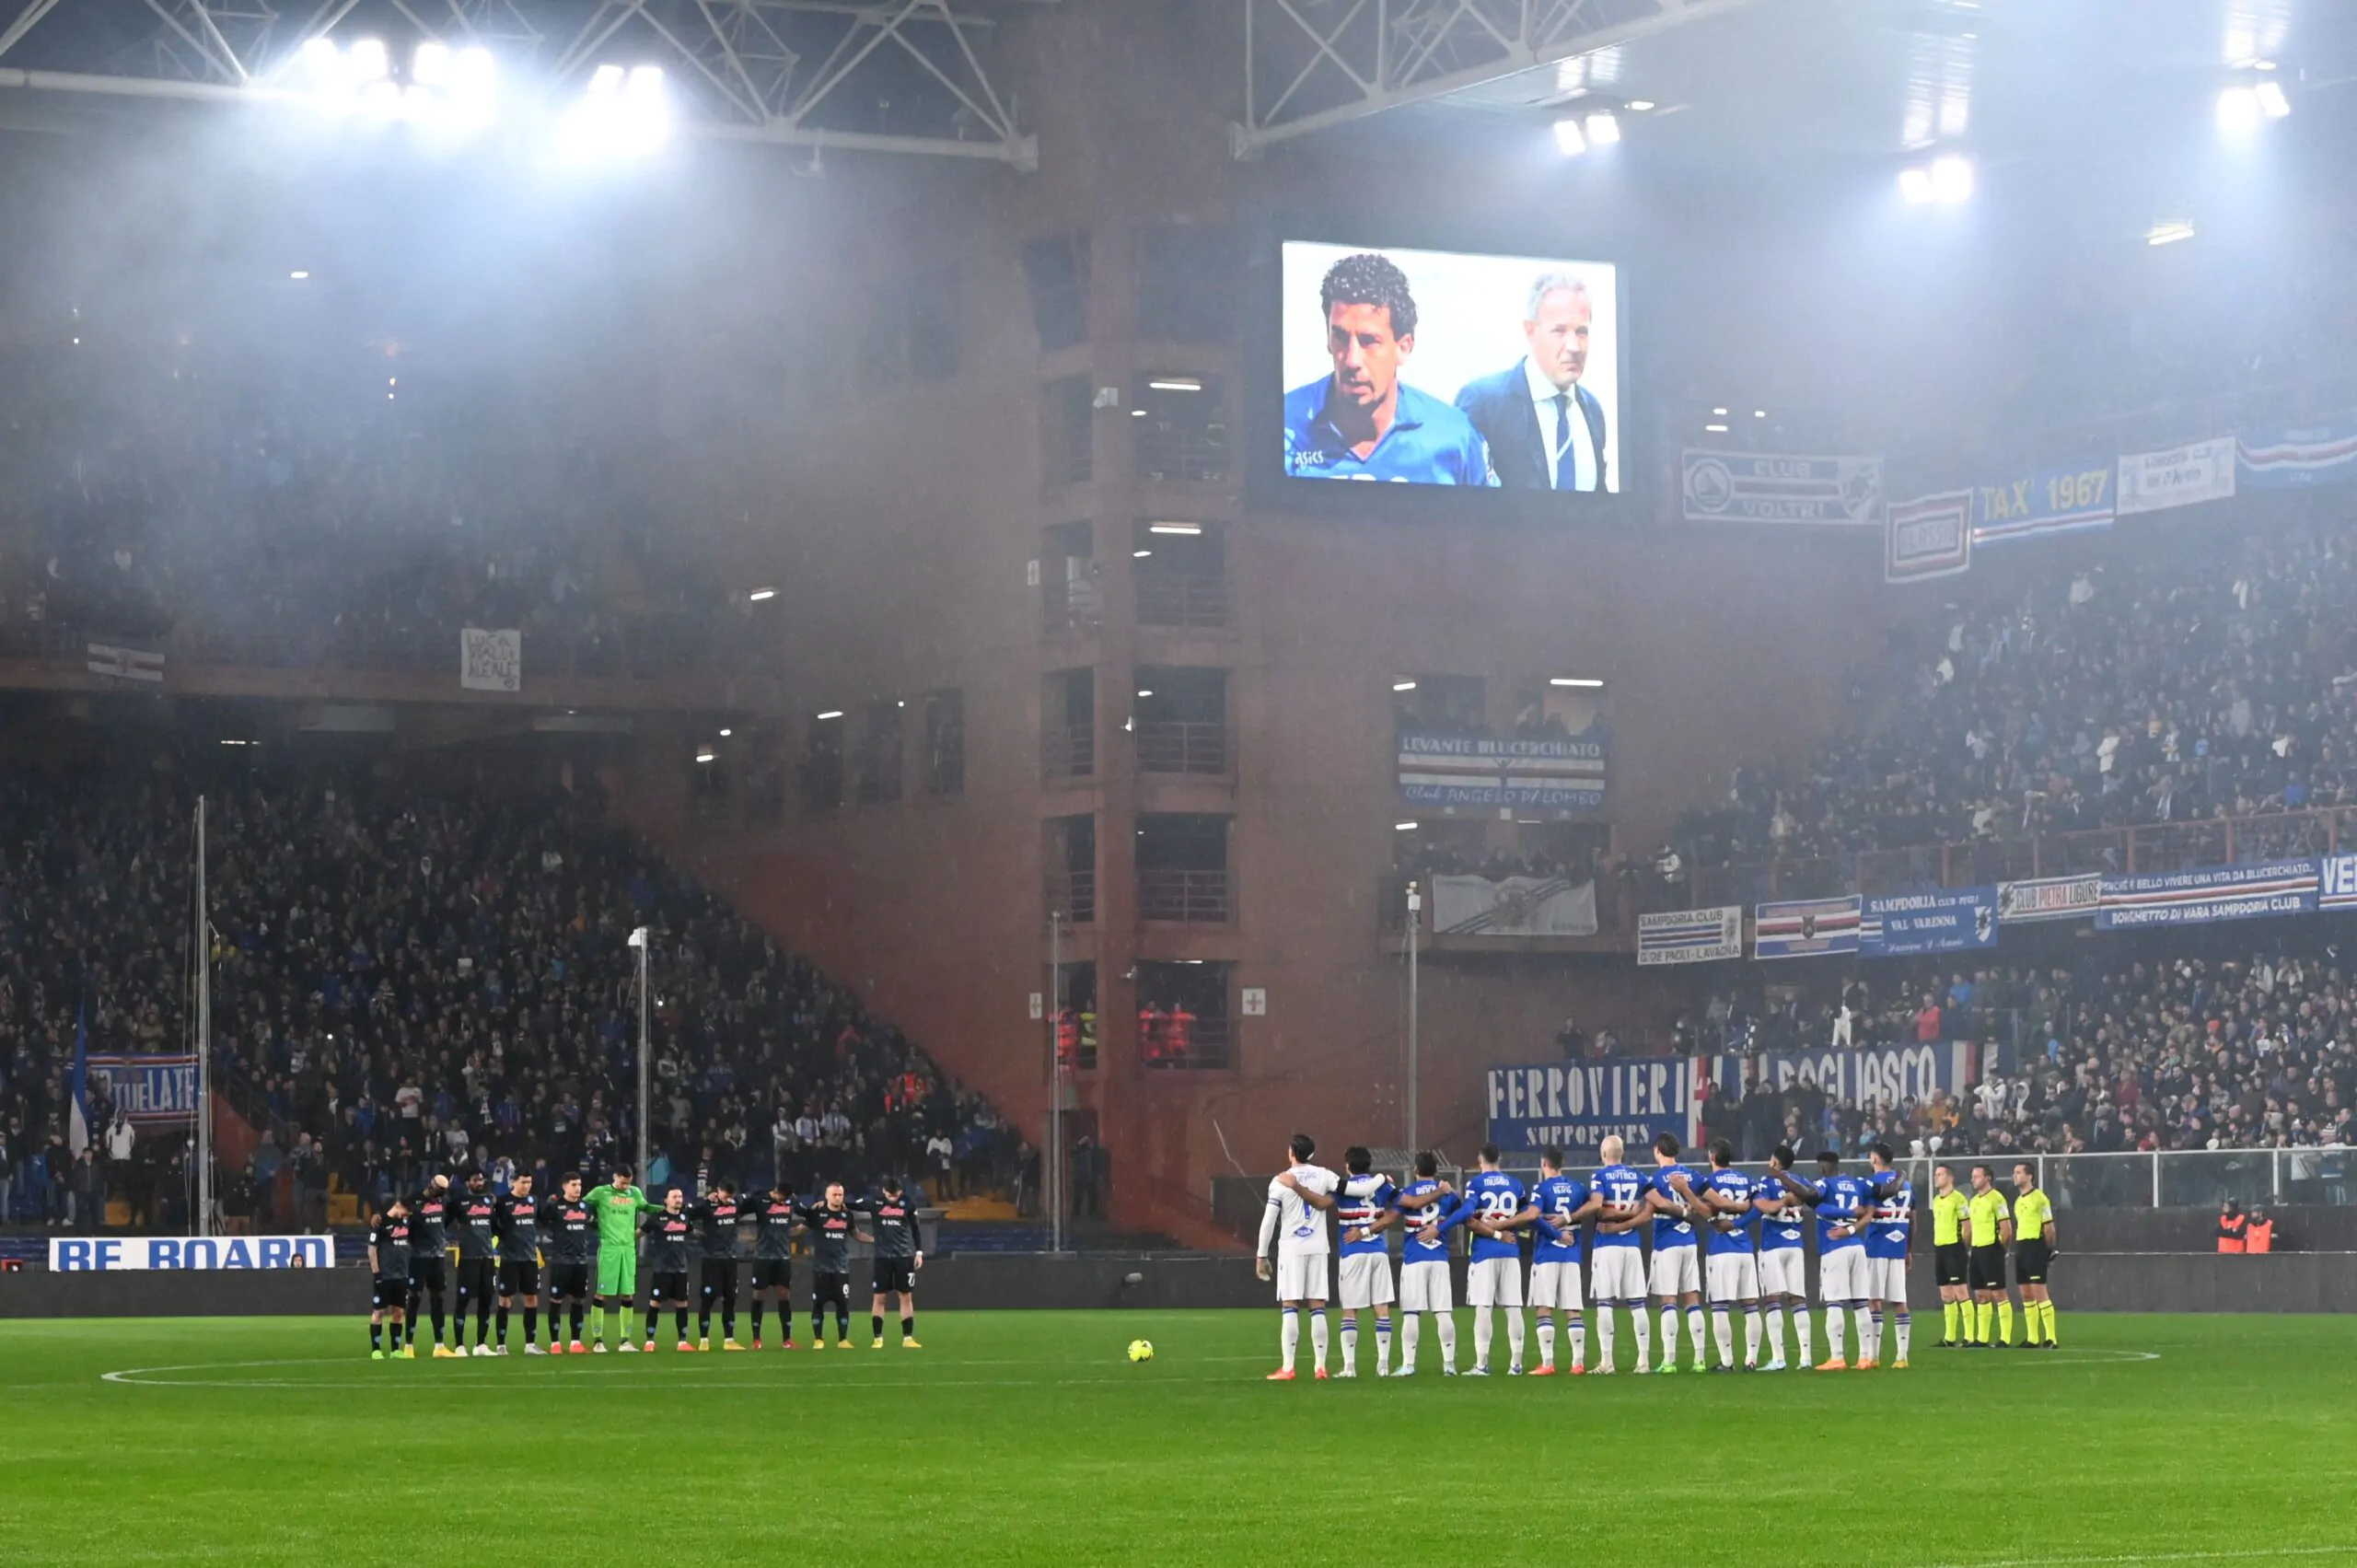 Sampdoria-Napoli, vergogna durante il minuto di silenzio per Vialli e Mihajlovic: cori beceri contro i napoletani